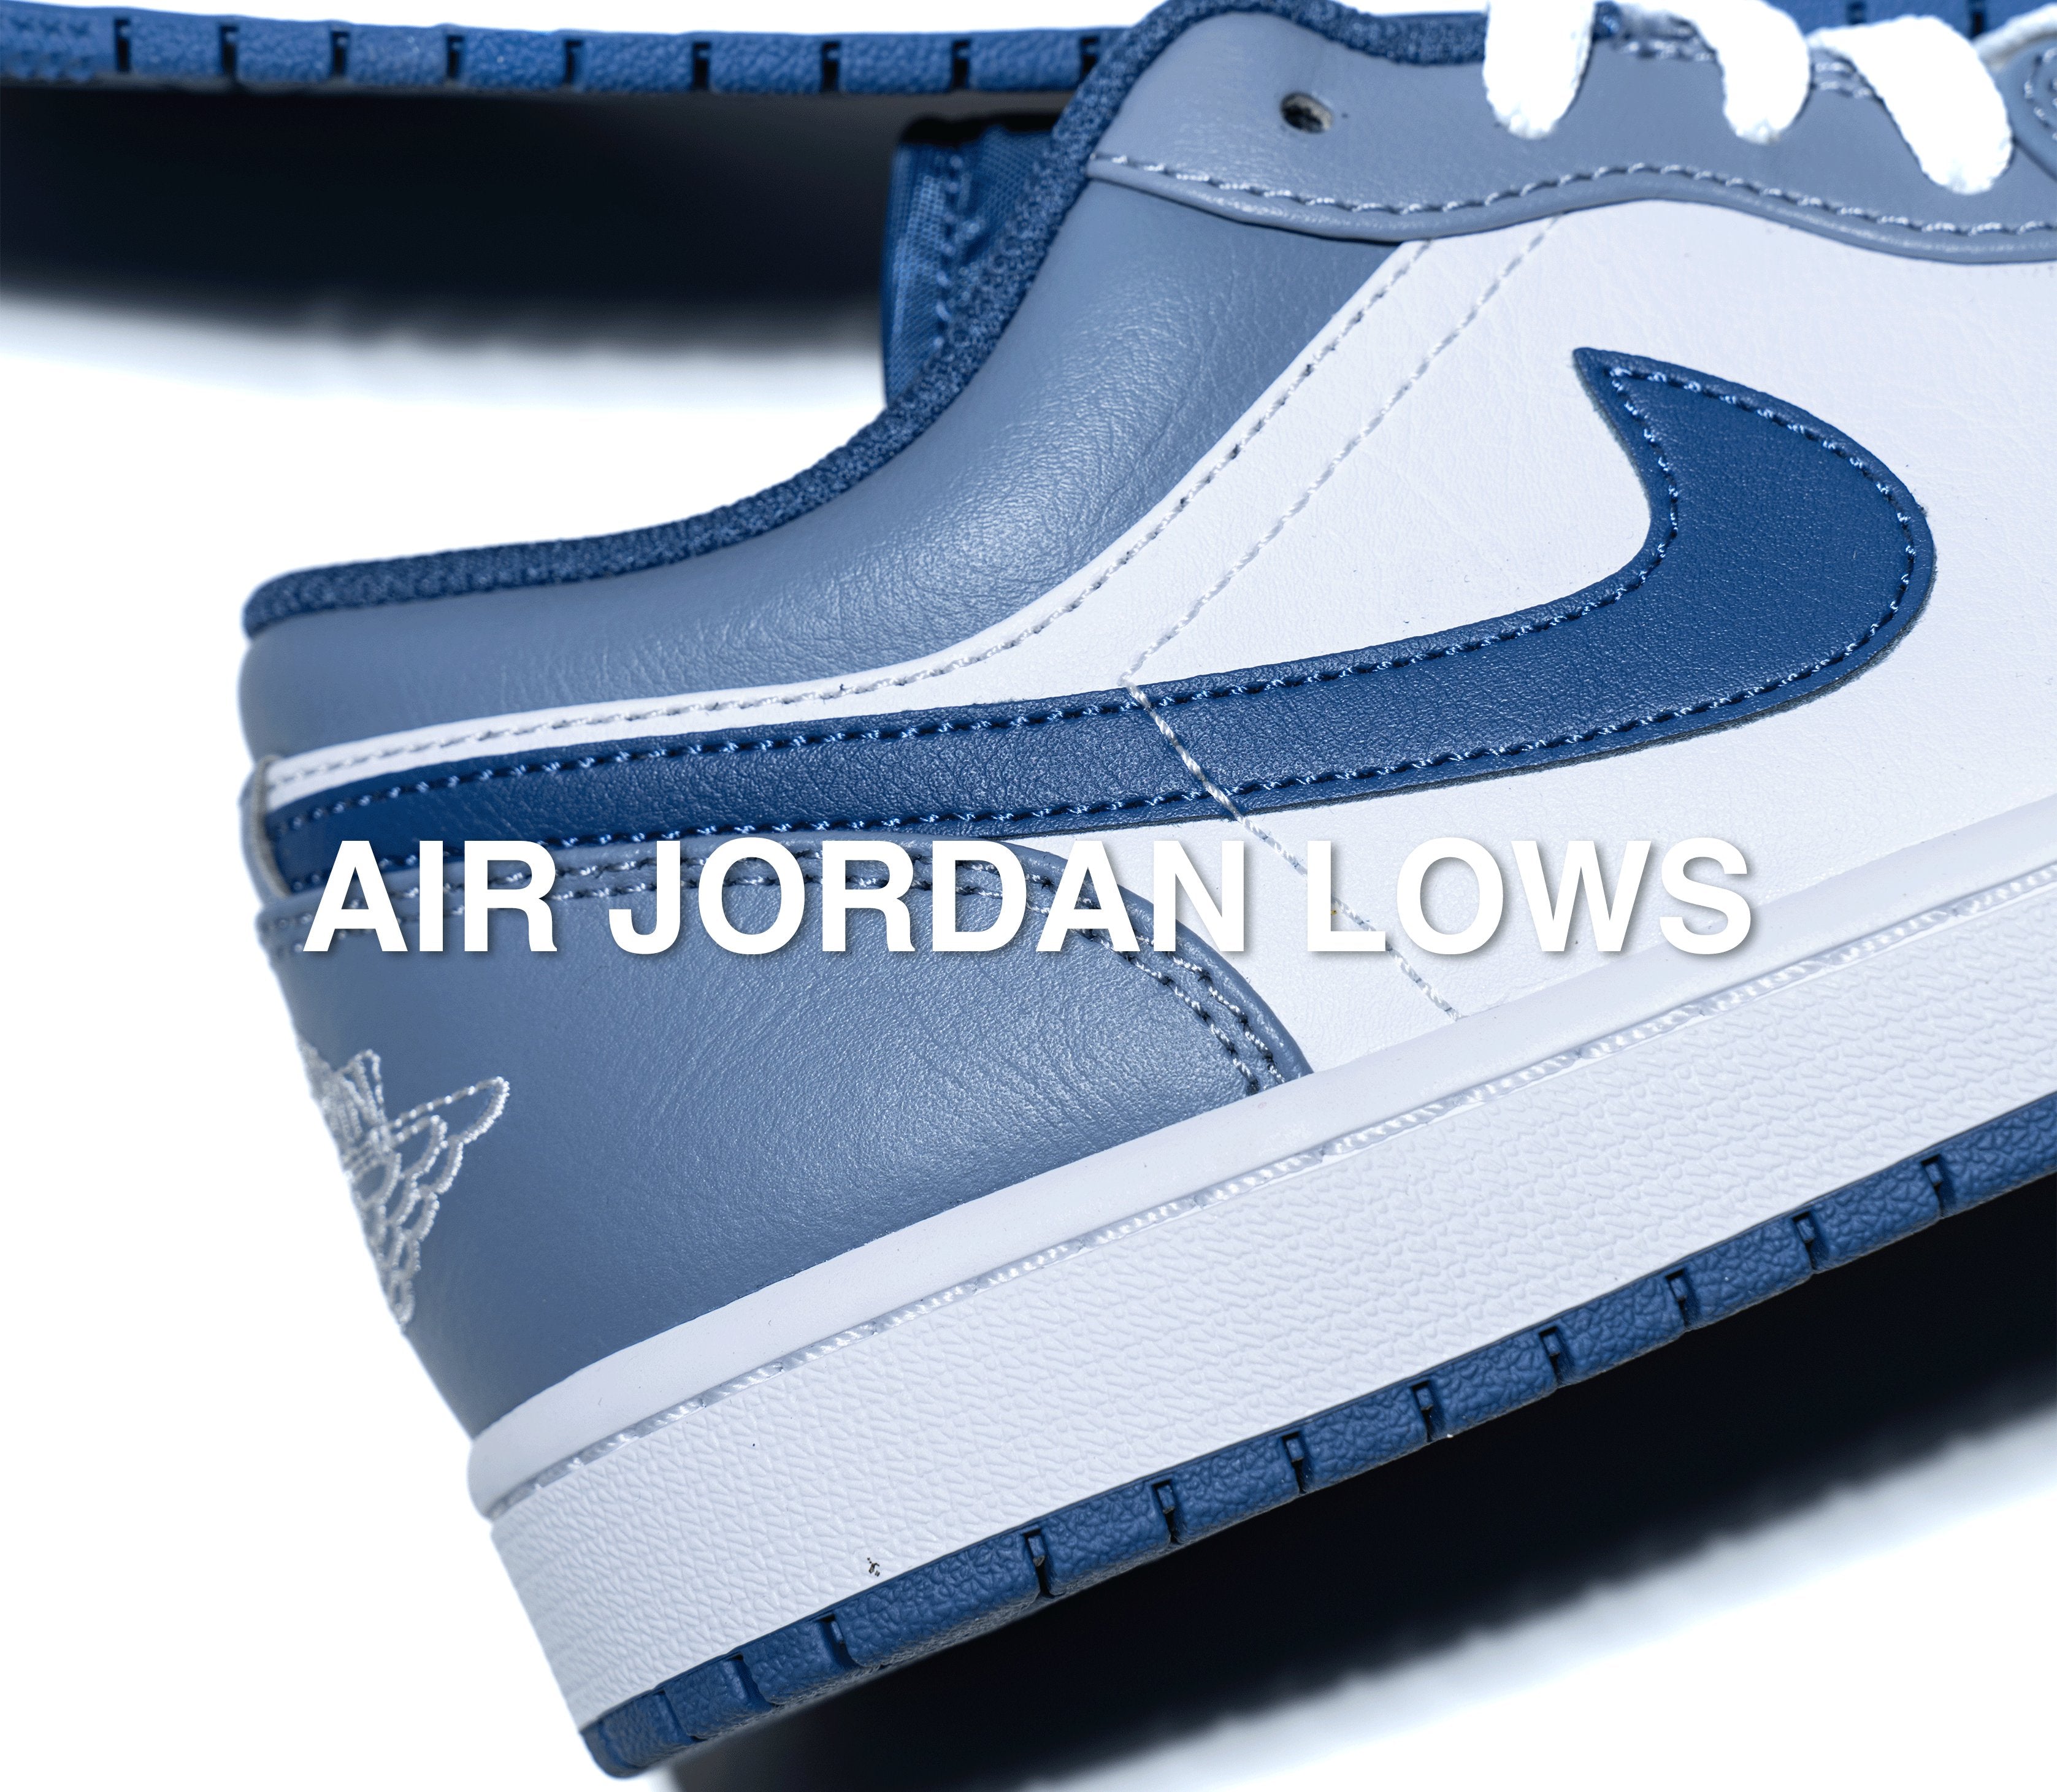 Air Jordan Lows